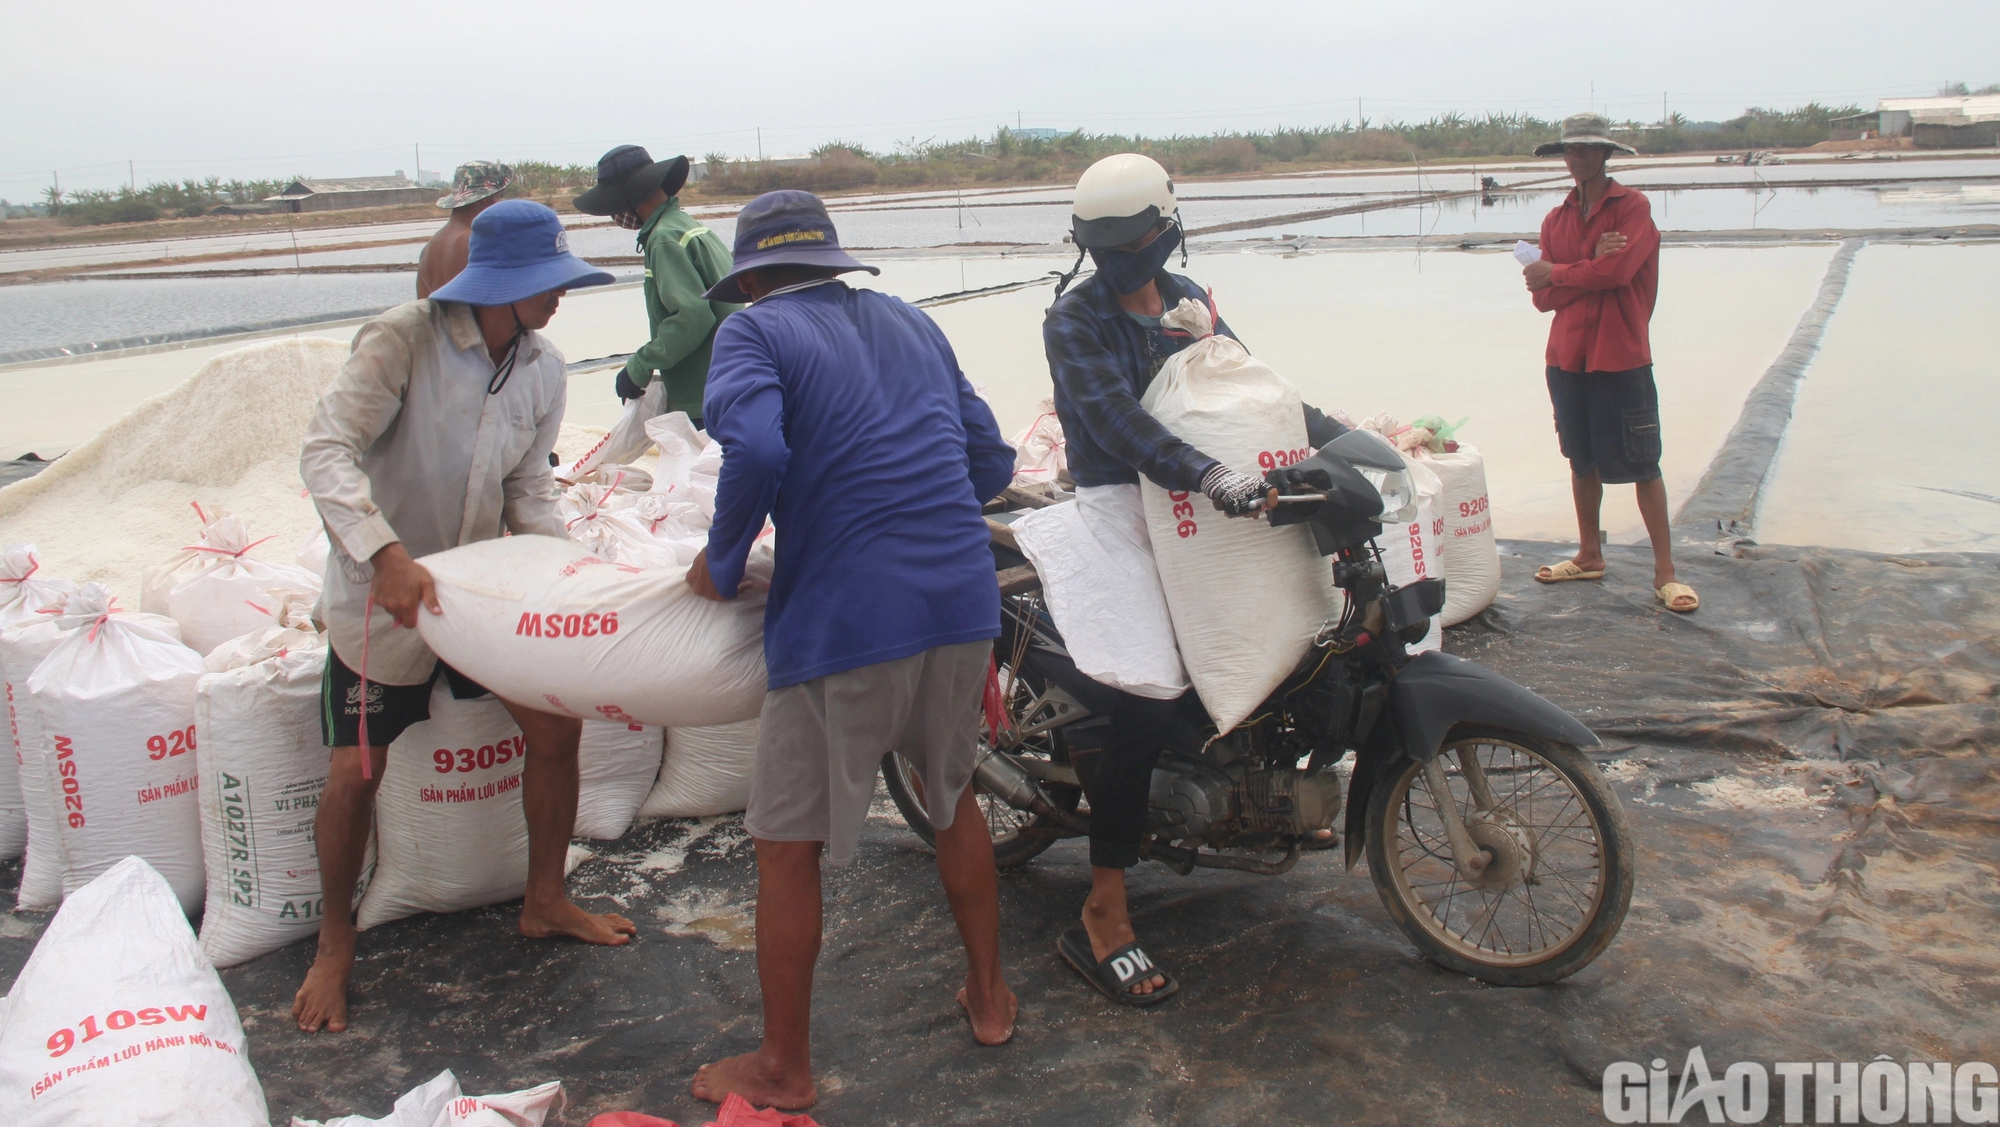 Diêm dân Bạc Liêu khấp khởi hy vọng nghề làm muối phát triển từ 100 tỷ đồng hỗ trợ- Ảnh 6.